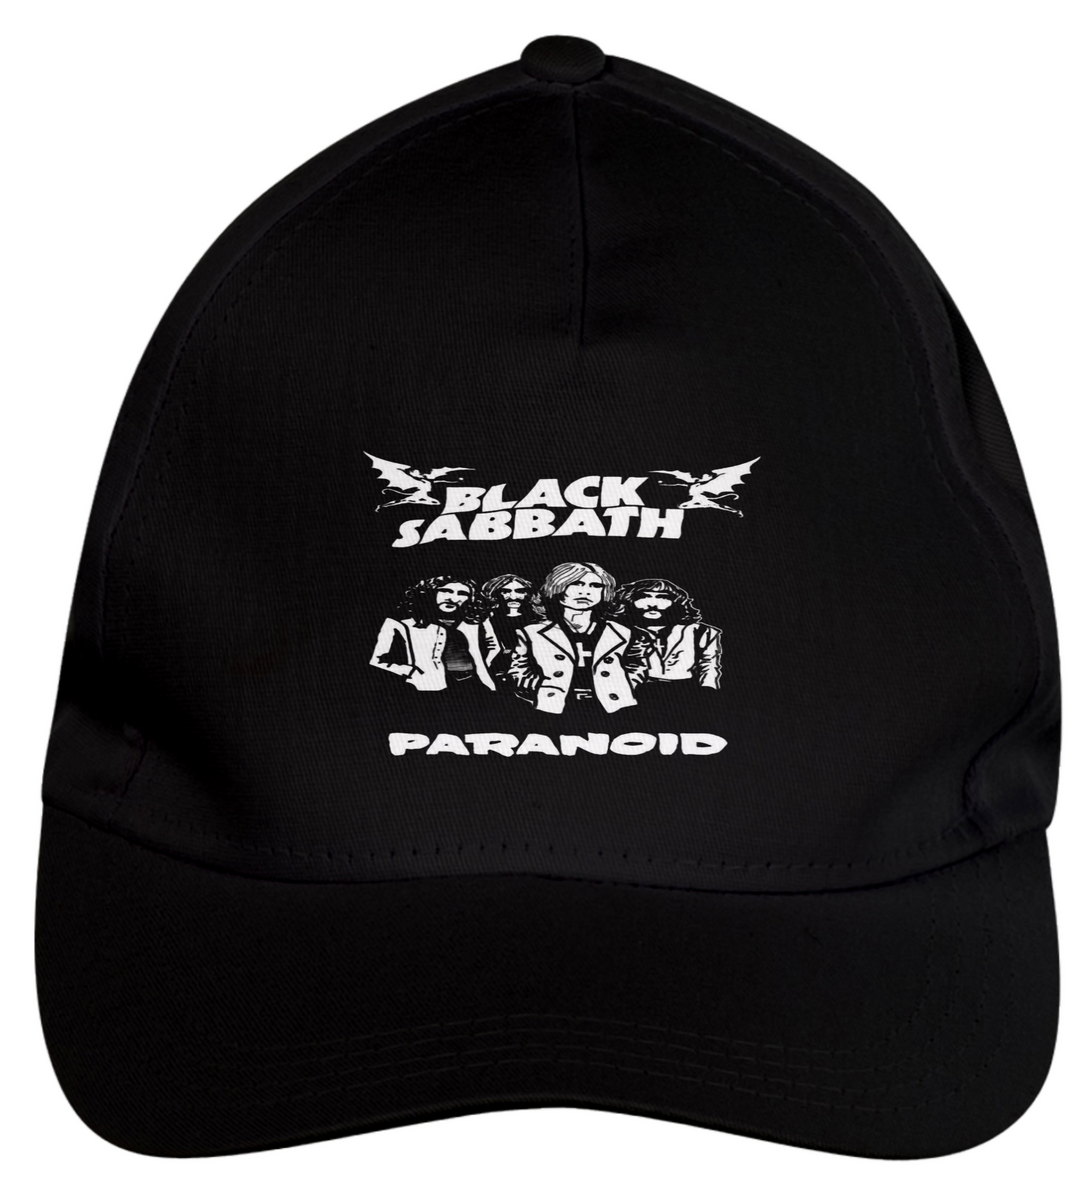 Nome do produto: Black Sabbath - Paranoid